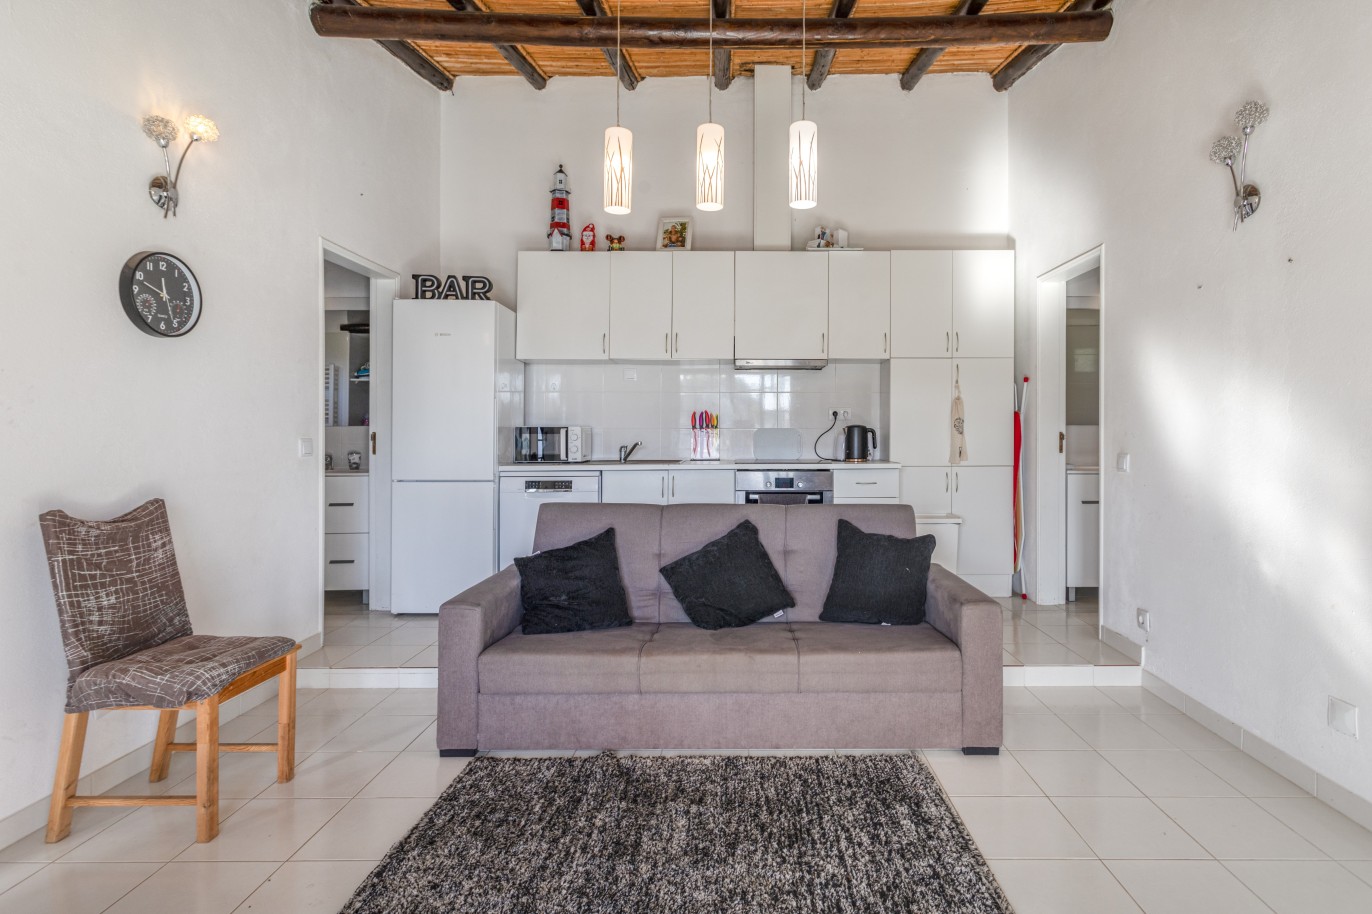 Propriedade com duas moradias para venda em Quarteira, Algarve_240079